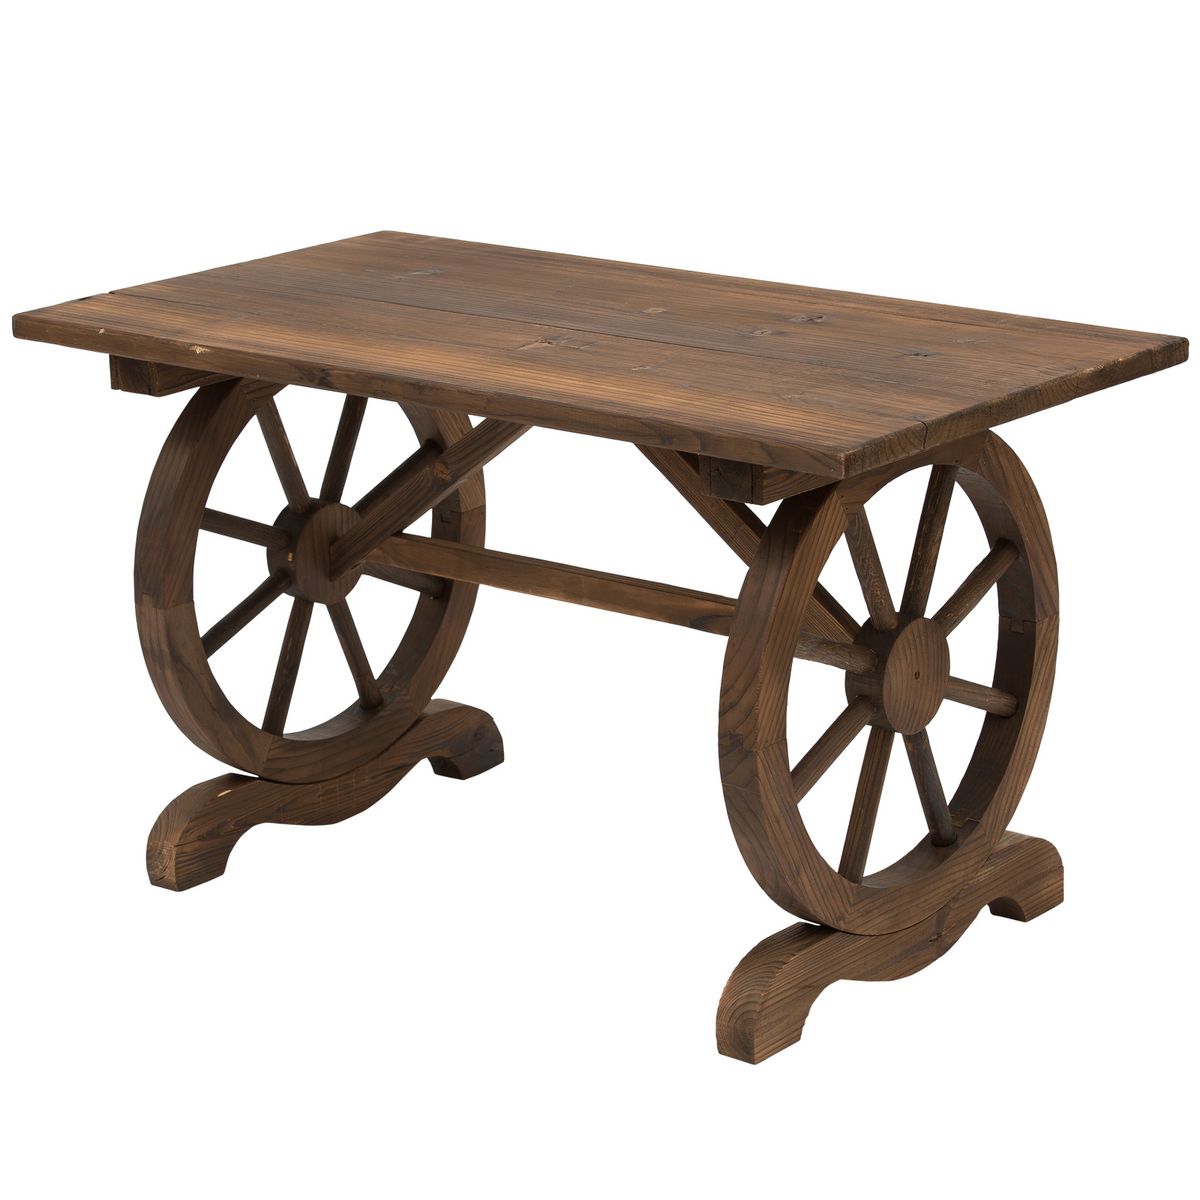 OUTSUNNY Table basse de jardin style rustique chic piètement roues charette bois sapin traité carbonisation